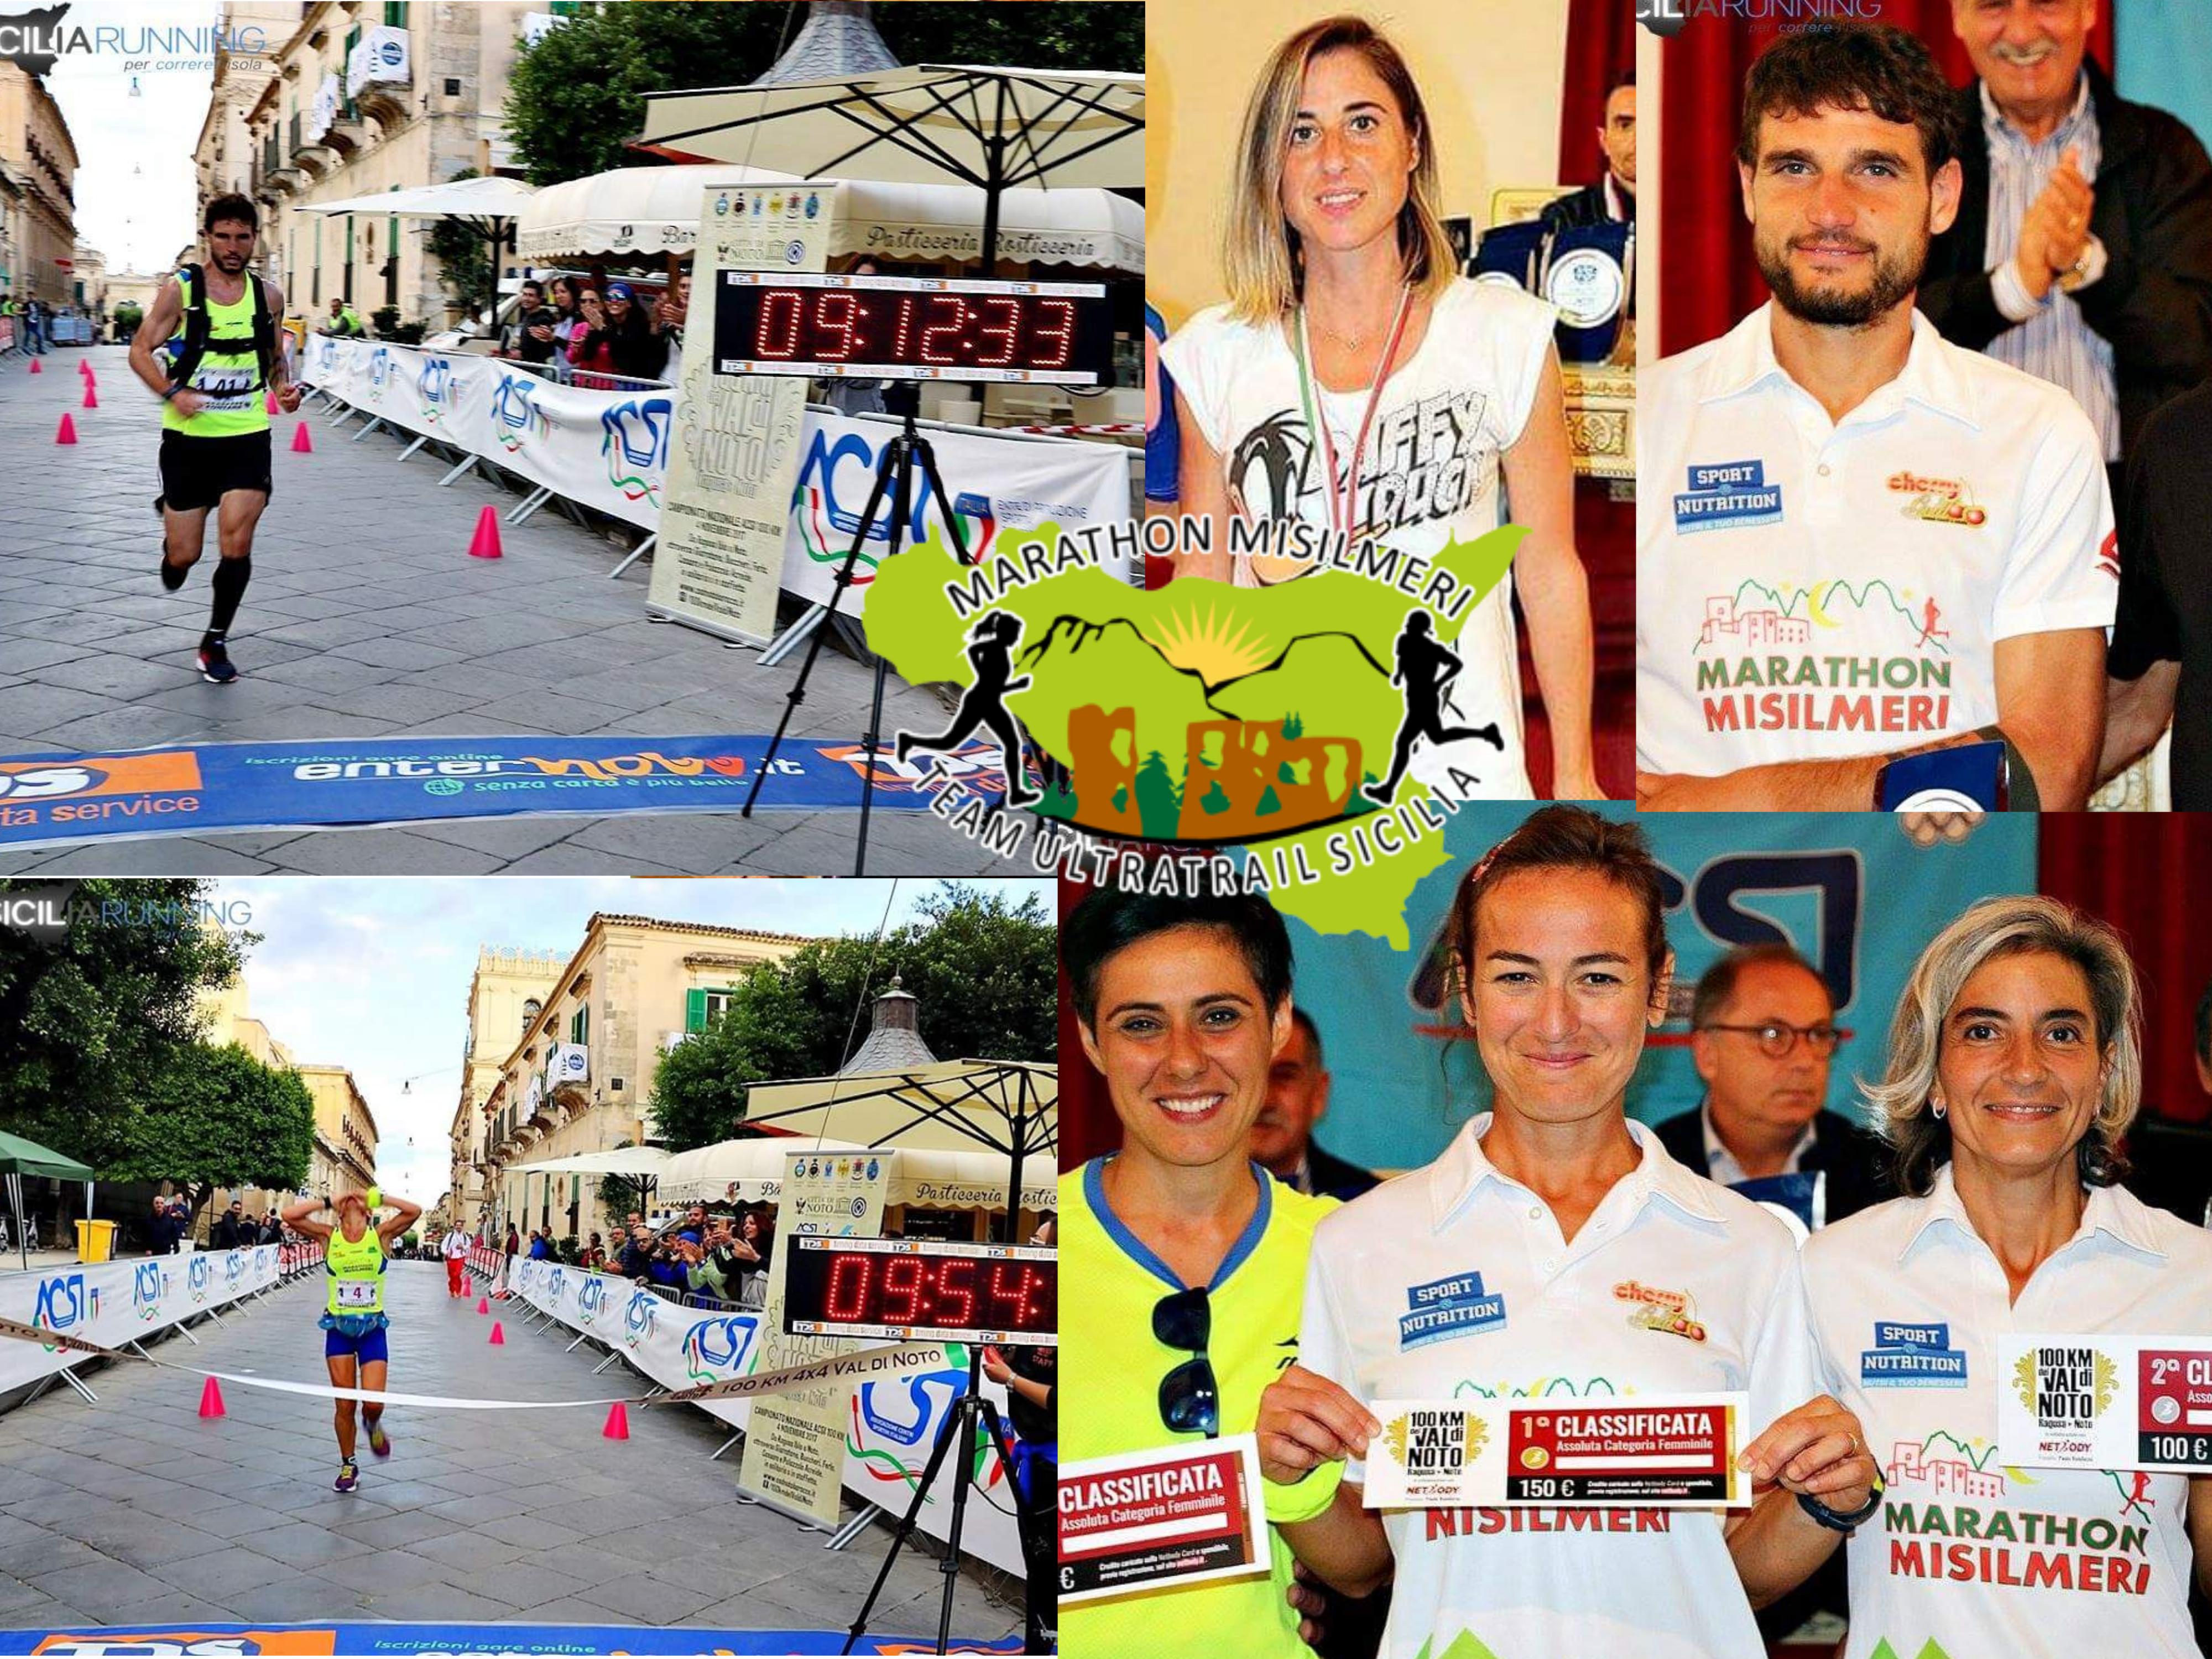 La Marathon Misilmeri sempre più “ULTRA”, quattro i titoli Italiani ACSI conquistati